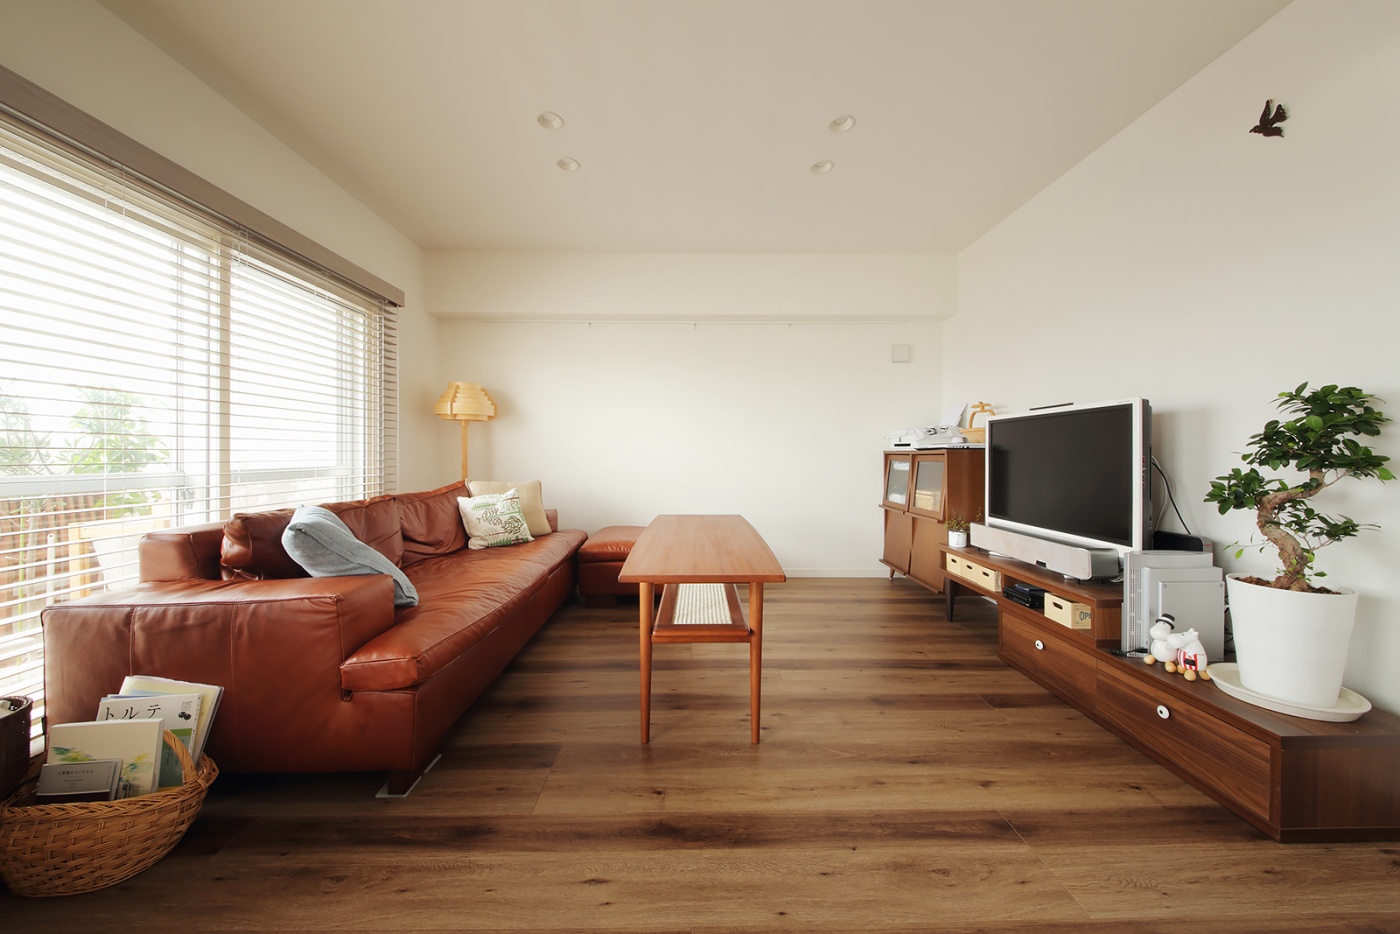 リビングは家具を低くしてすっきりと広く見せている。ツートンの色ムラのある木フローリングがいい味を出している。